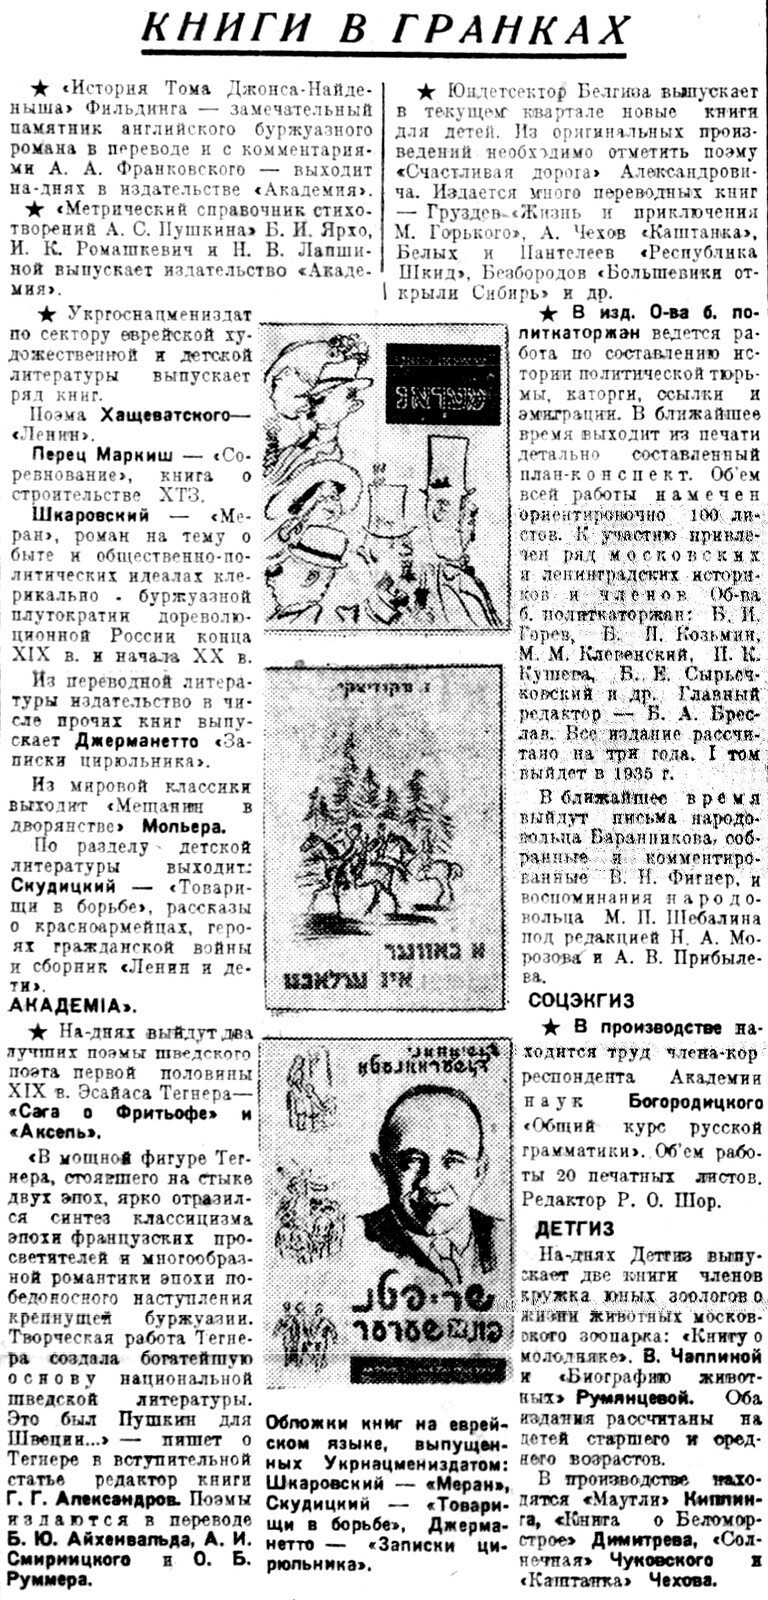 «Литературная газета», 24 октября 1934 г. (среди прочих – анонс дебютной книги Веры Чаплиной;  она выйдет весной 1935 года под названием «Малыши с зеленой площадки»)